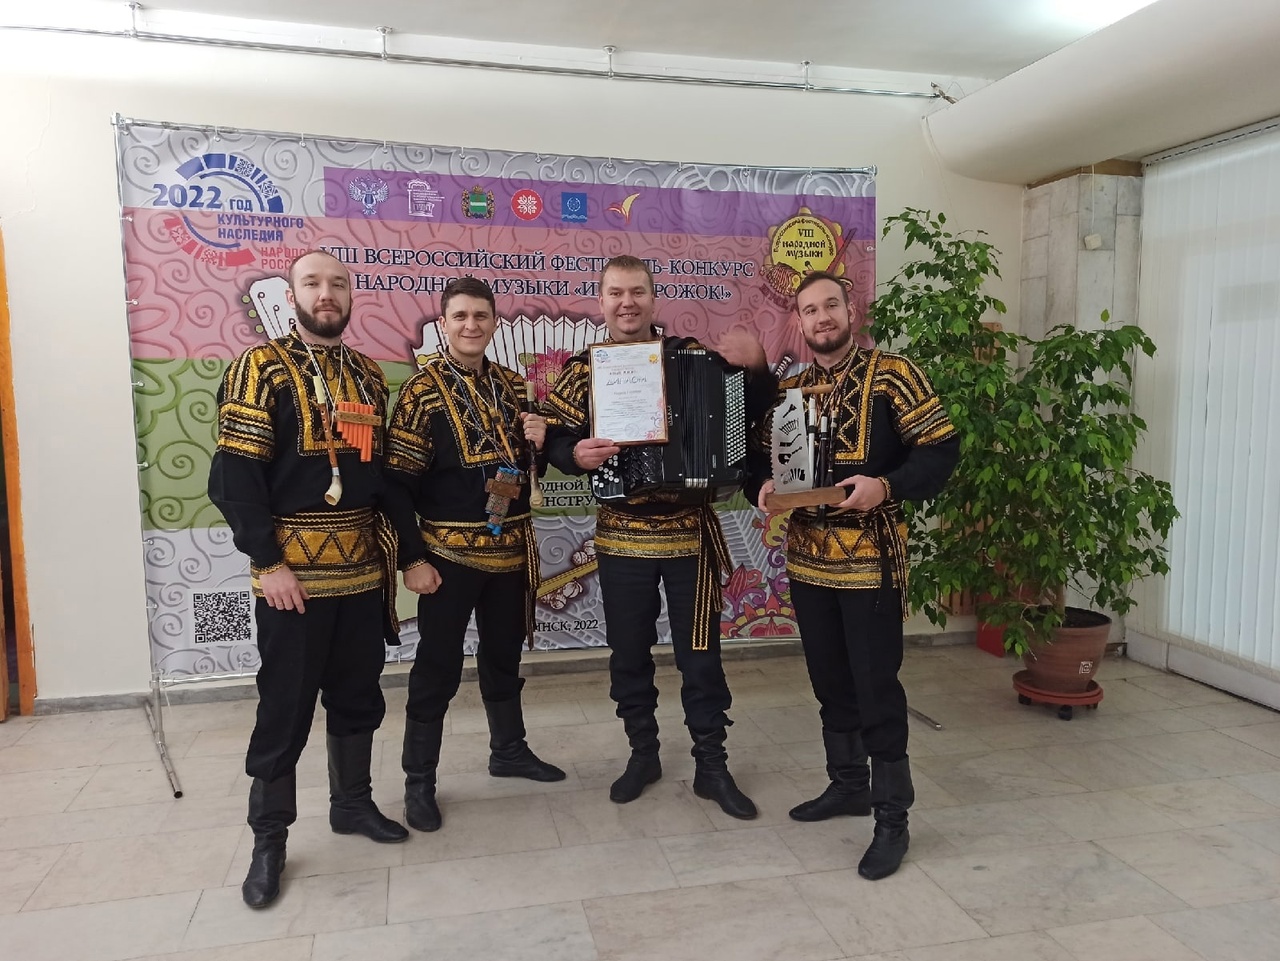 Творческий коллектив из посёлка Разумное победил во Всероссийском фестиваль-конкурсе «Играй, рожок!»